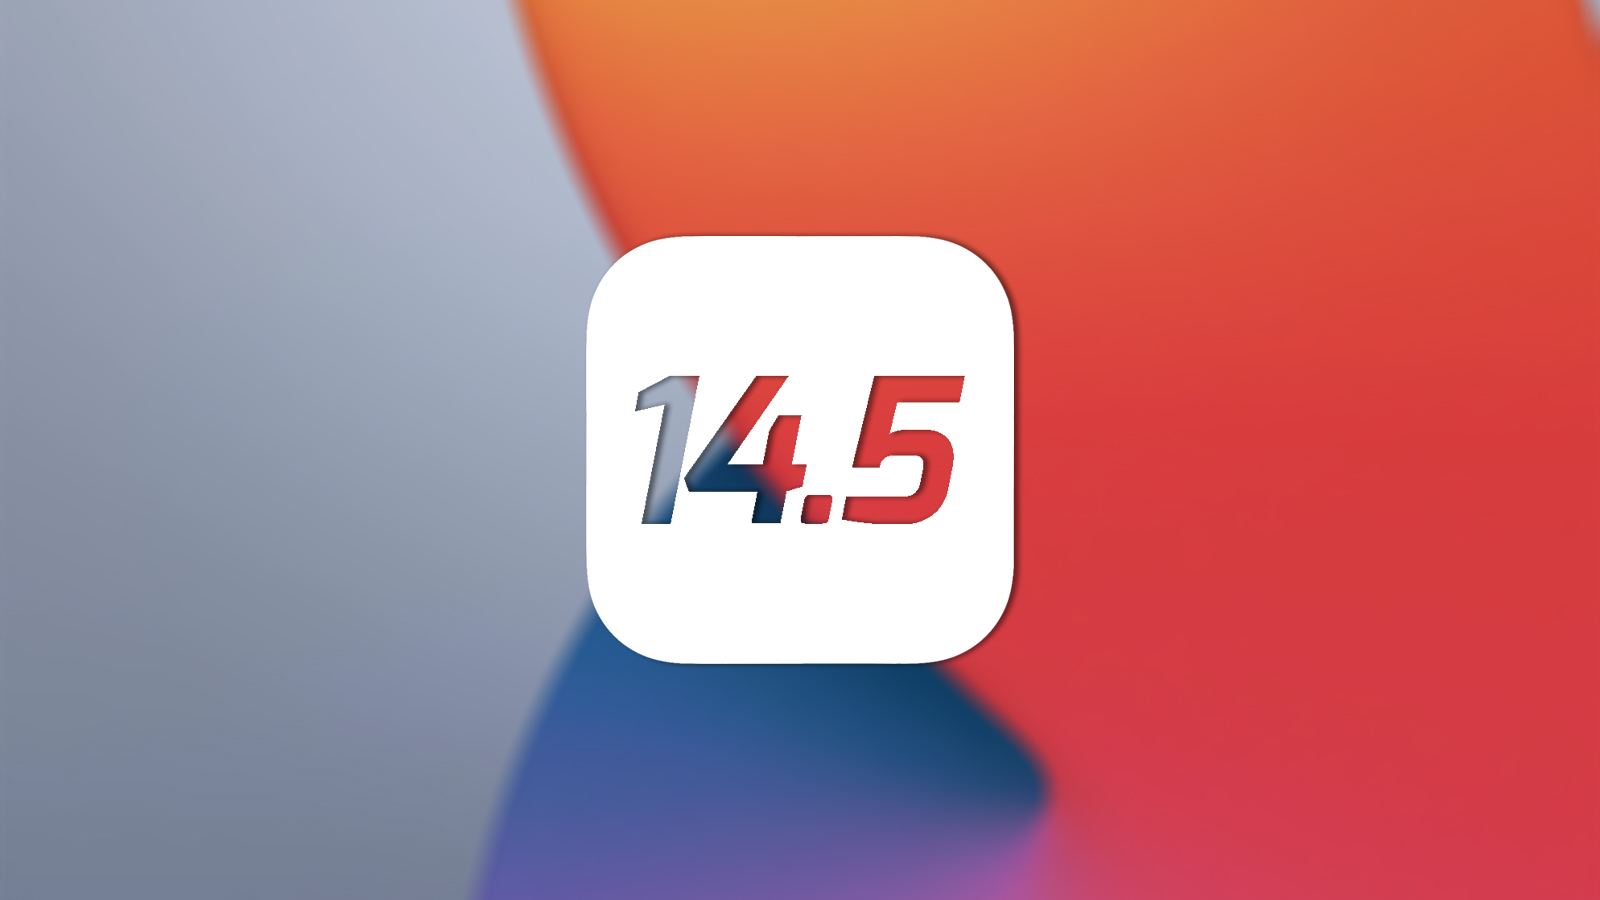 iOS 29 أبريل 2021 0 تعليقات iOS 14.5: أبلغ المستخدمون عن مشكلة في شفافية تتبع التطبيق